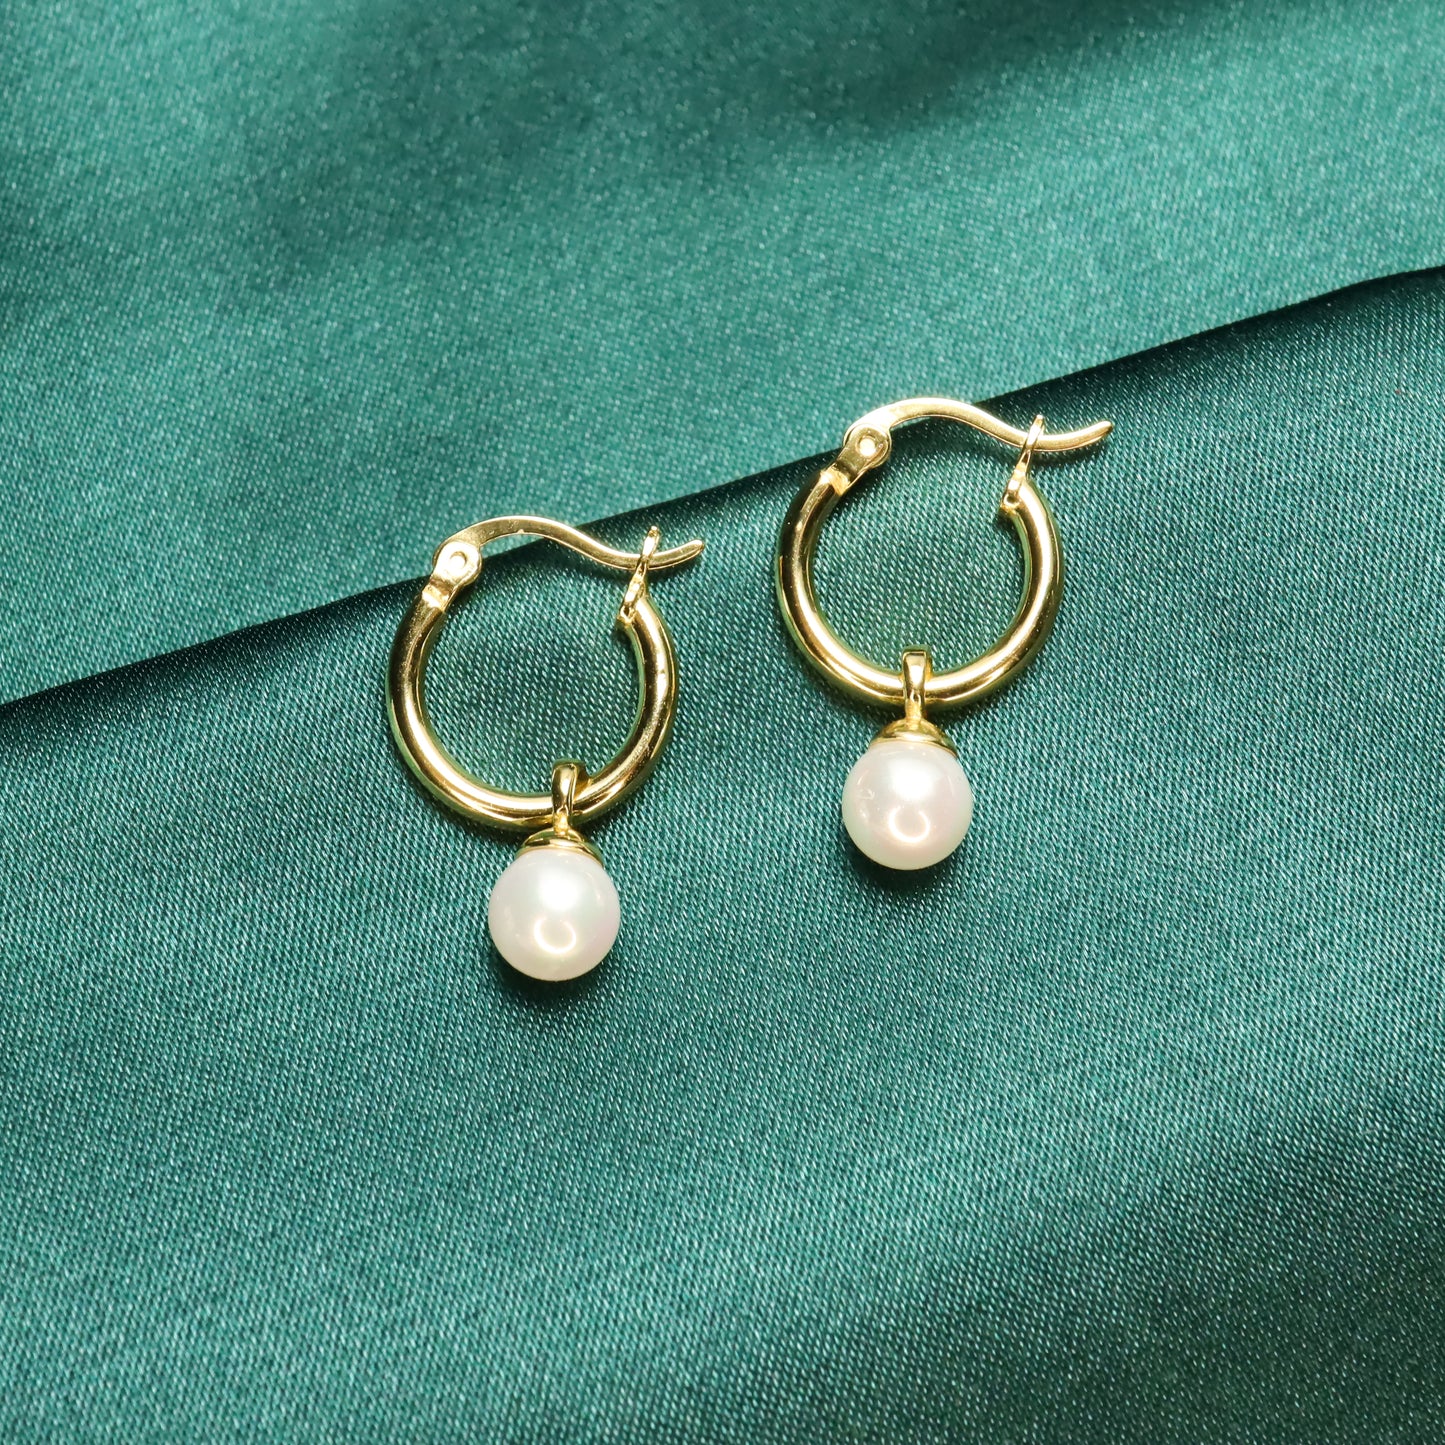 Pearl Lady - Vintage S925 Sterling Silver & Pearl Hoop Earrings (Color: Gold)